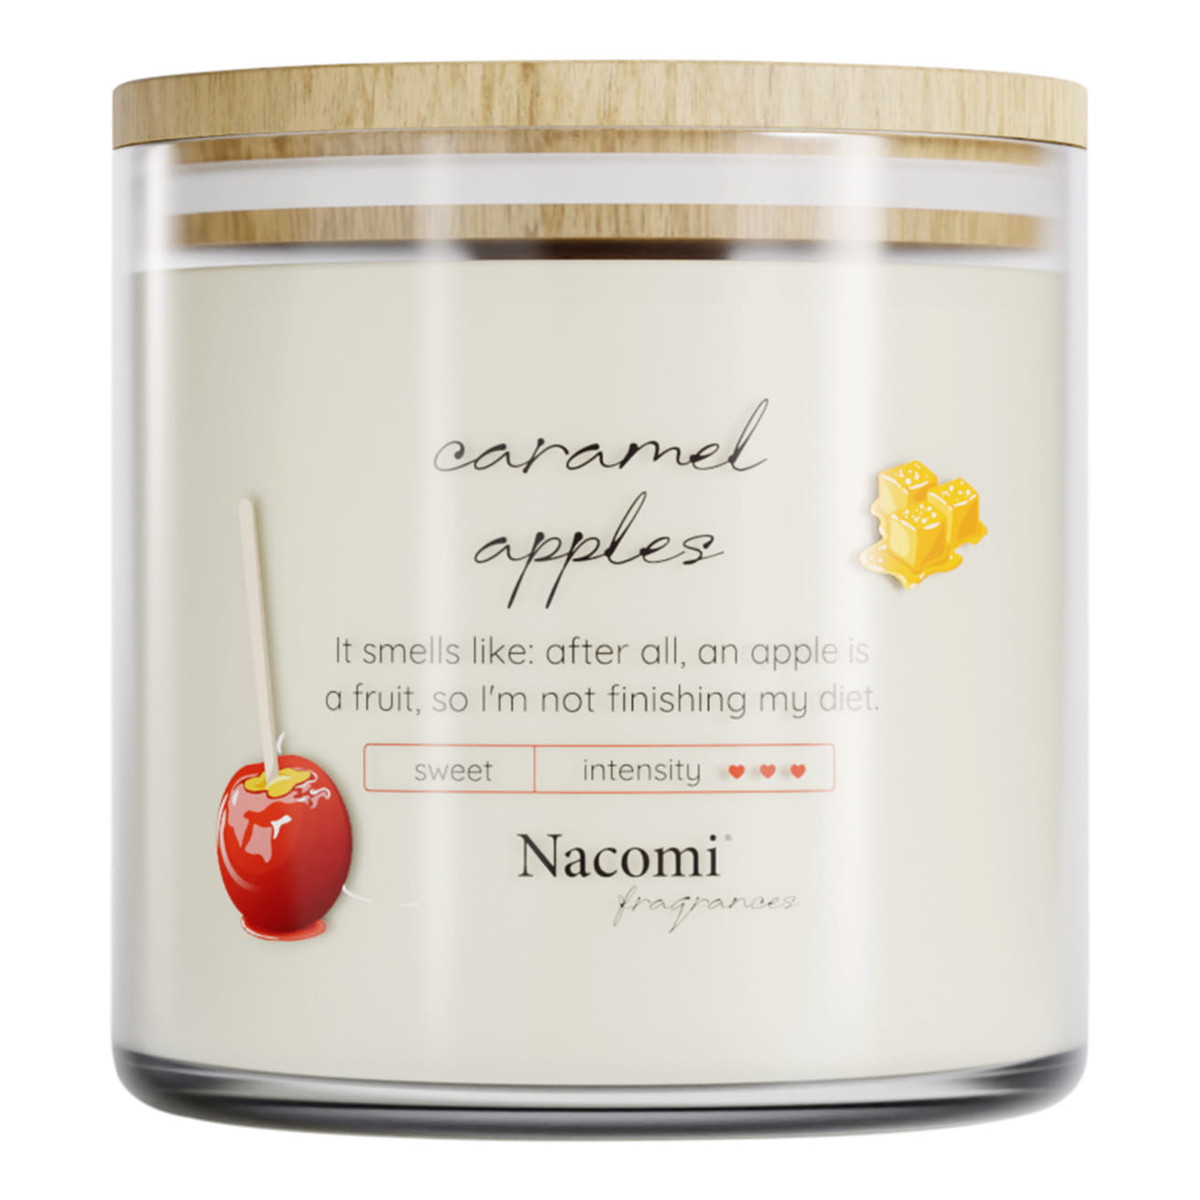 Nacomi Fragrances Świeca zapachowa sojowa - Caramel apples 450g